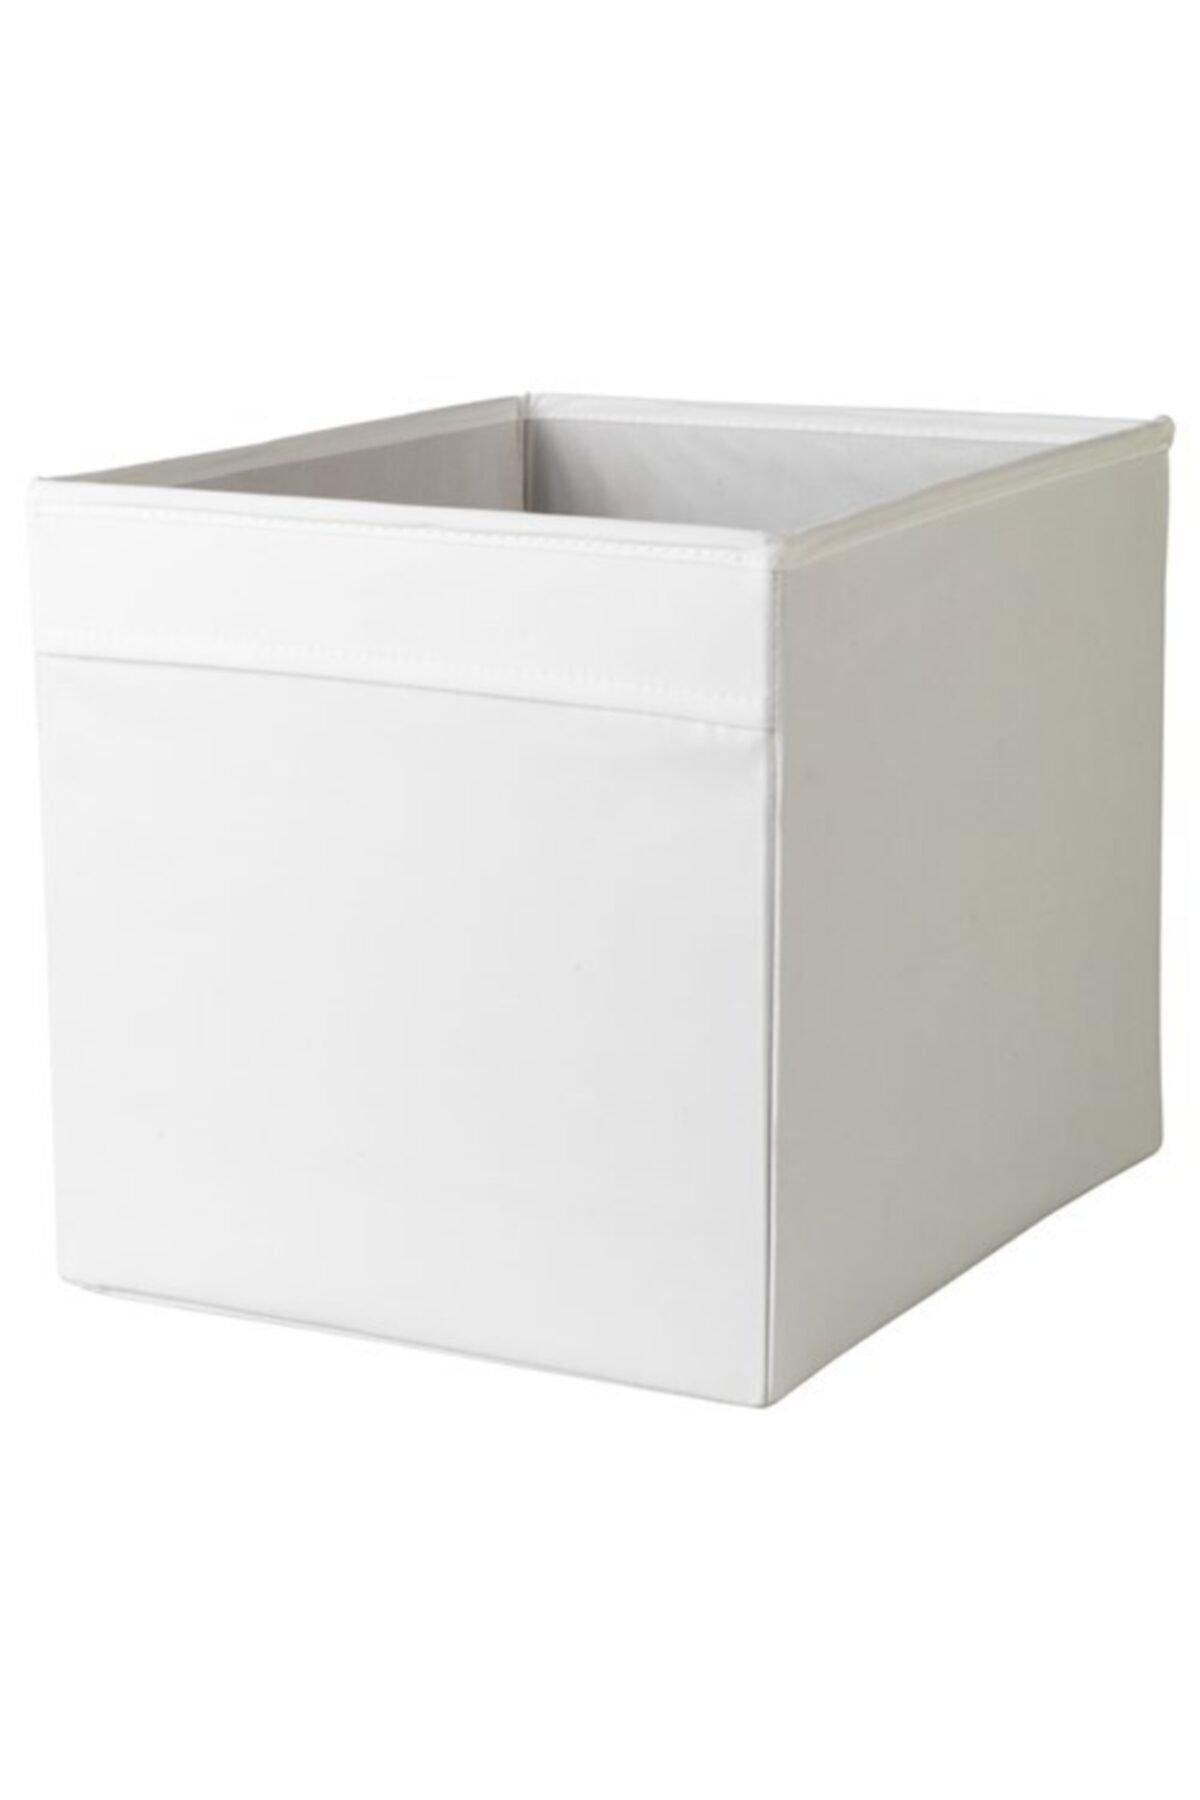 IKEA Dröna Beyaz Çok Amaçlı Düzenleyici Kutu 33x38x33 Cm